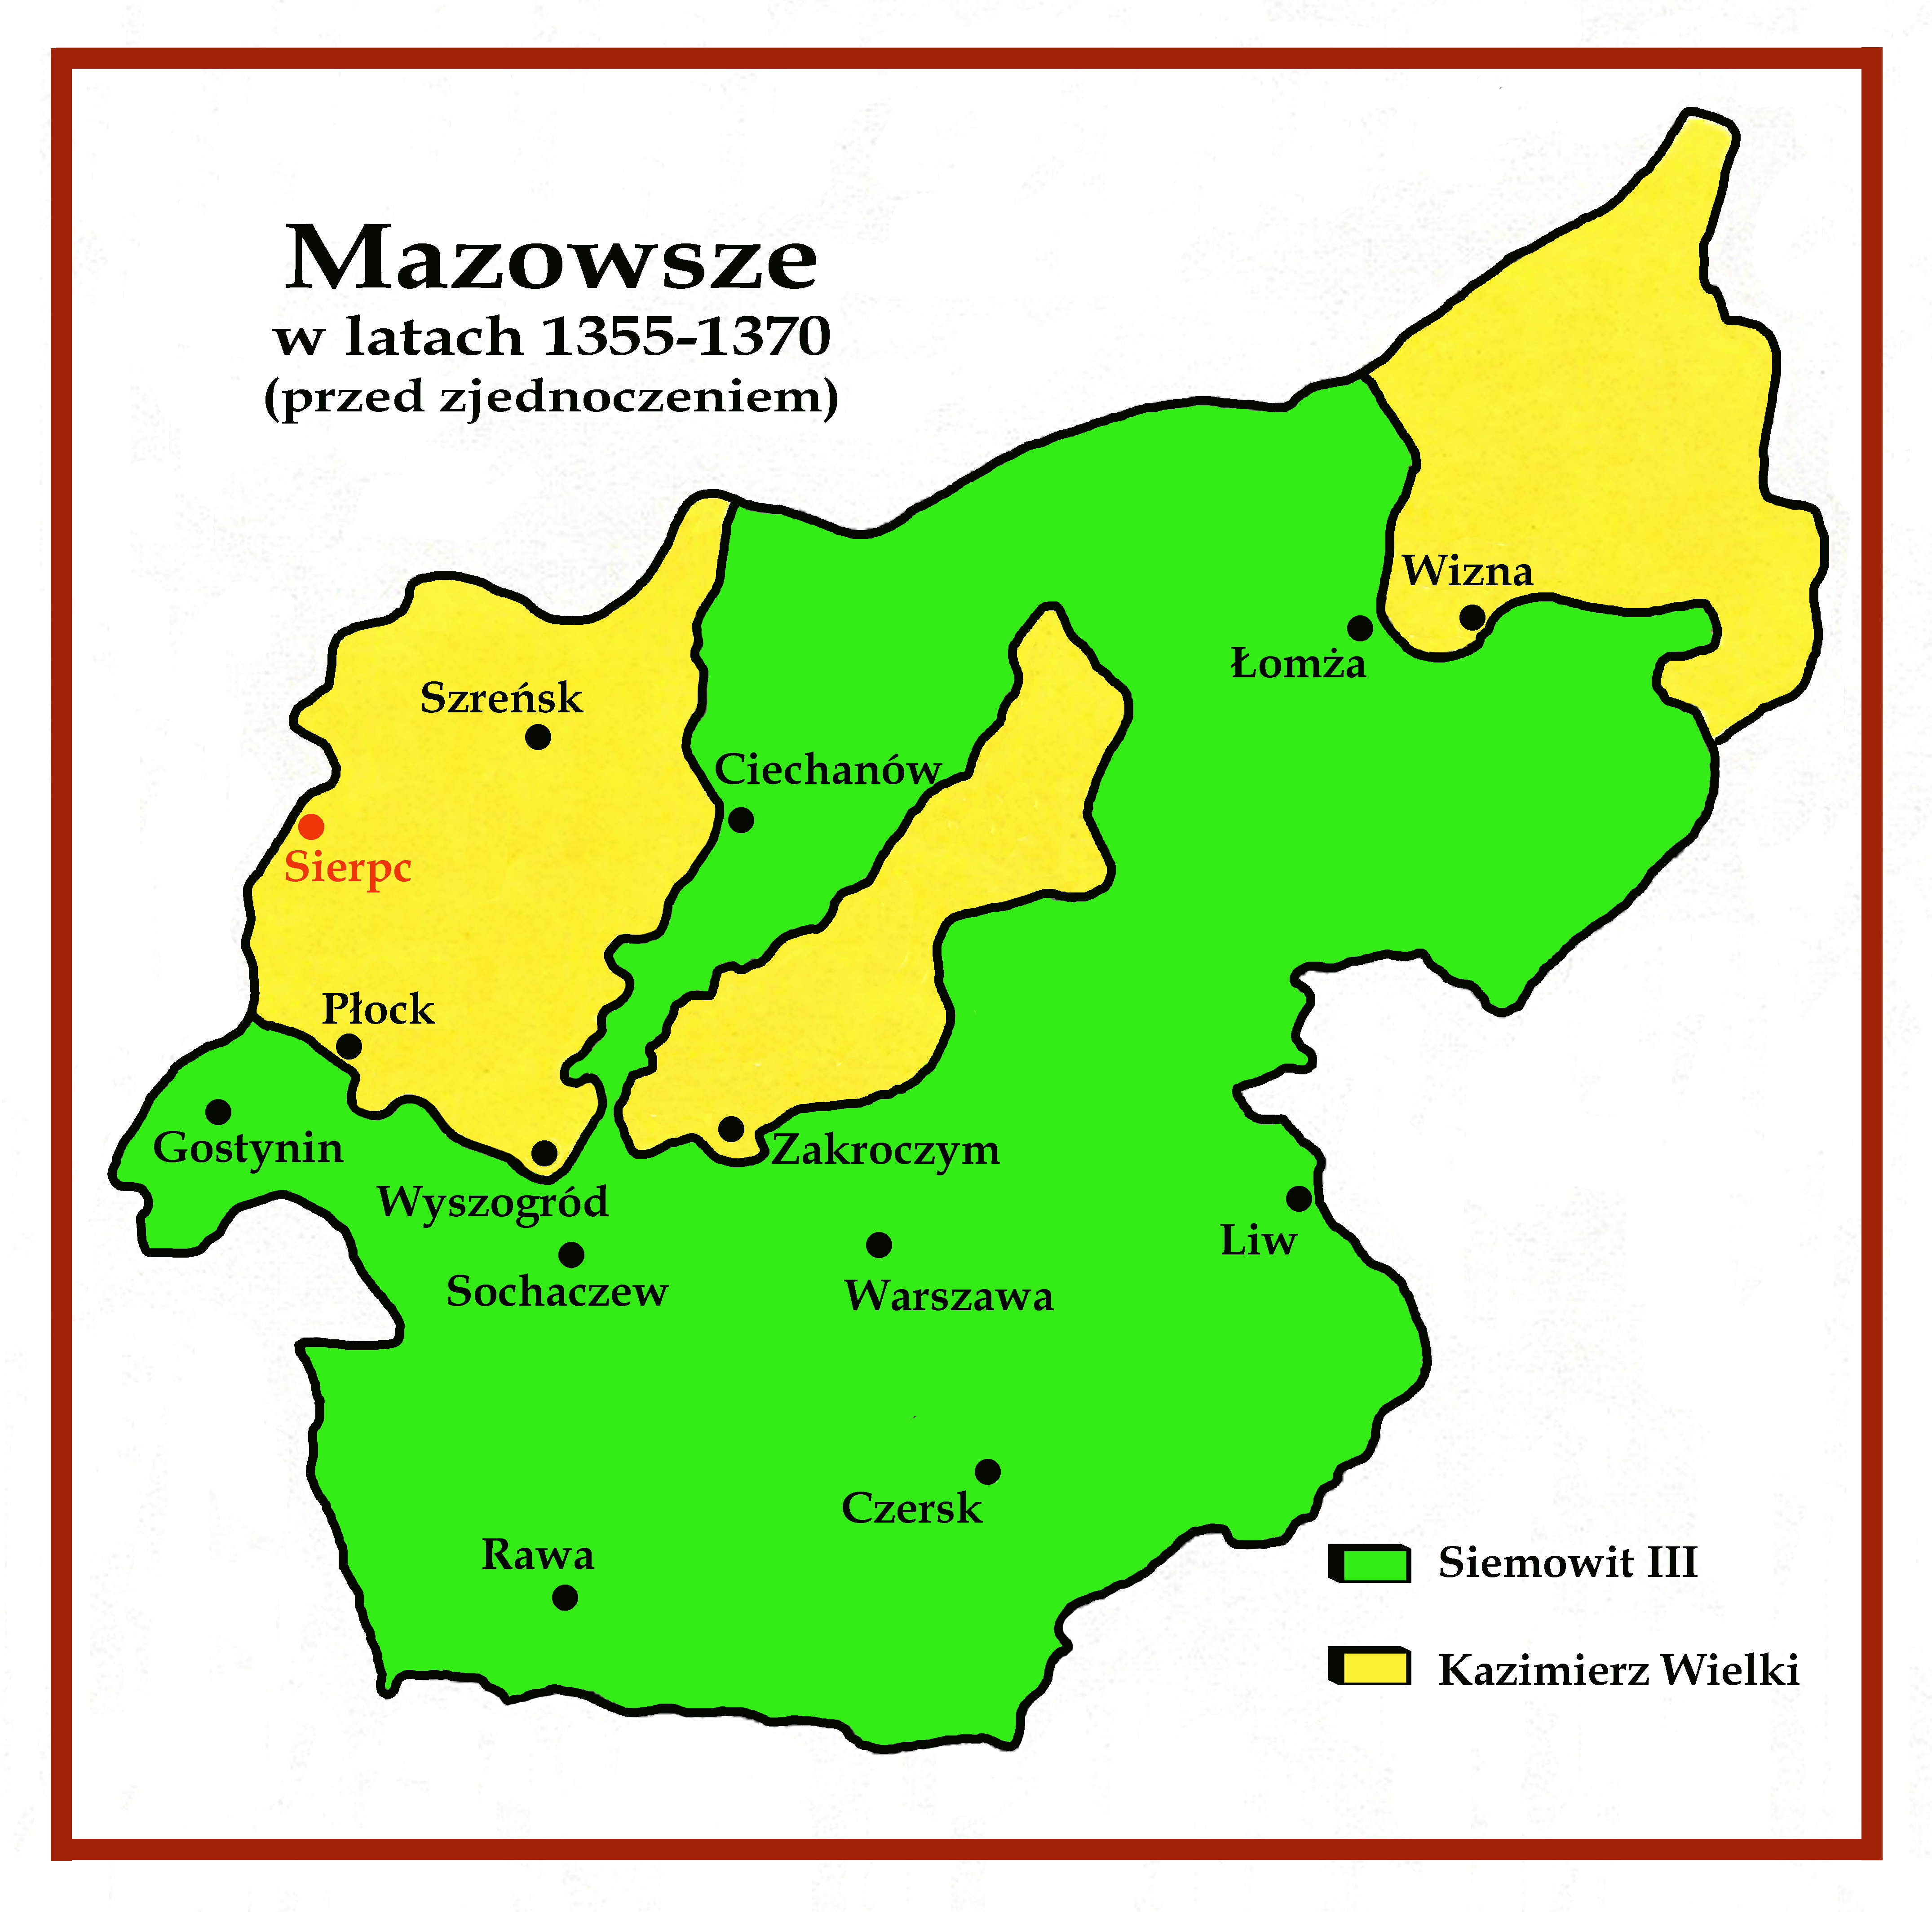 Mazowsze przed zjednoczeniem przez Siemowita III. Zaznaczono pooenie Sierpca.